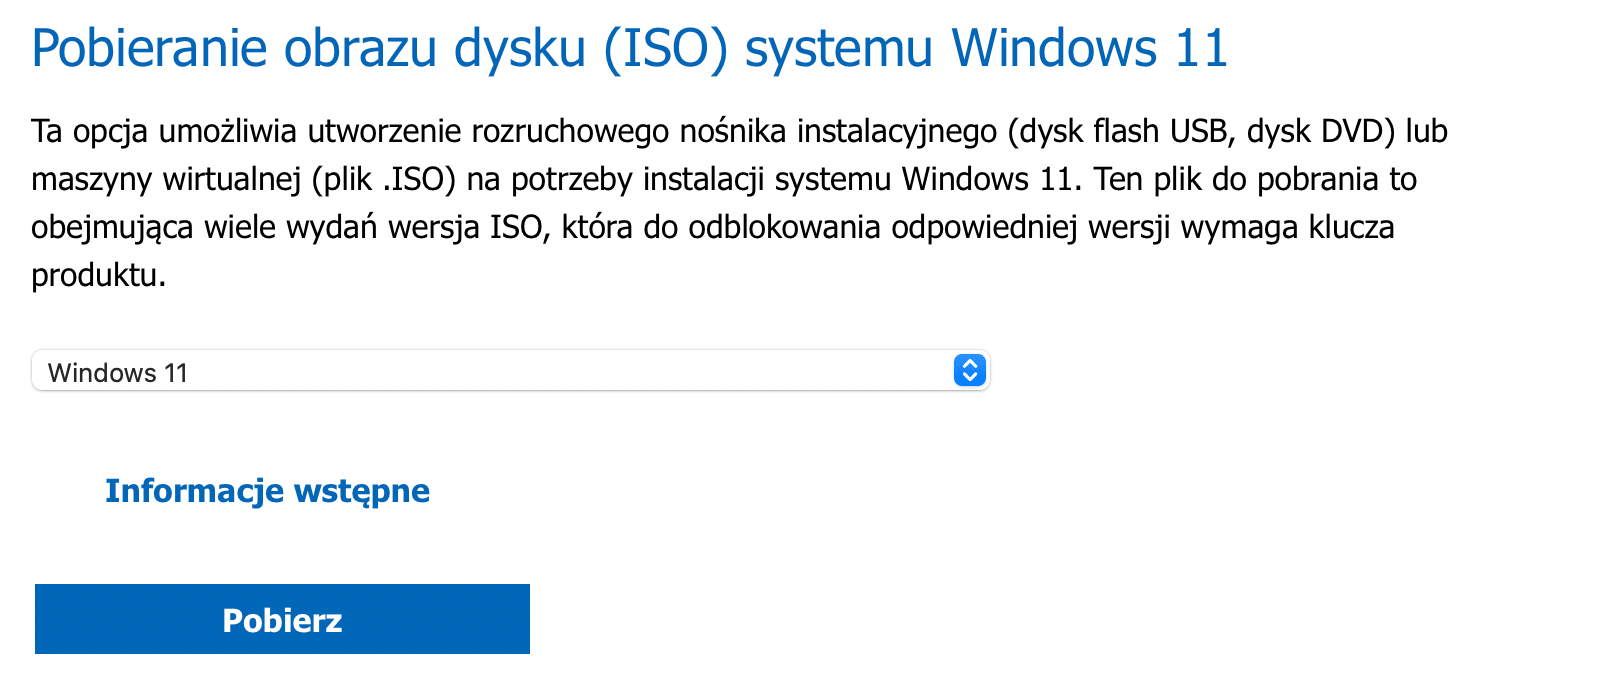 Pobieranie obrazu dysku (ISO) systemu Windows 11